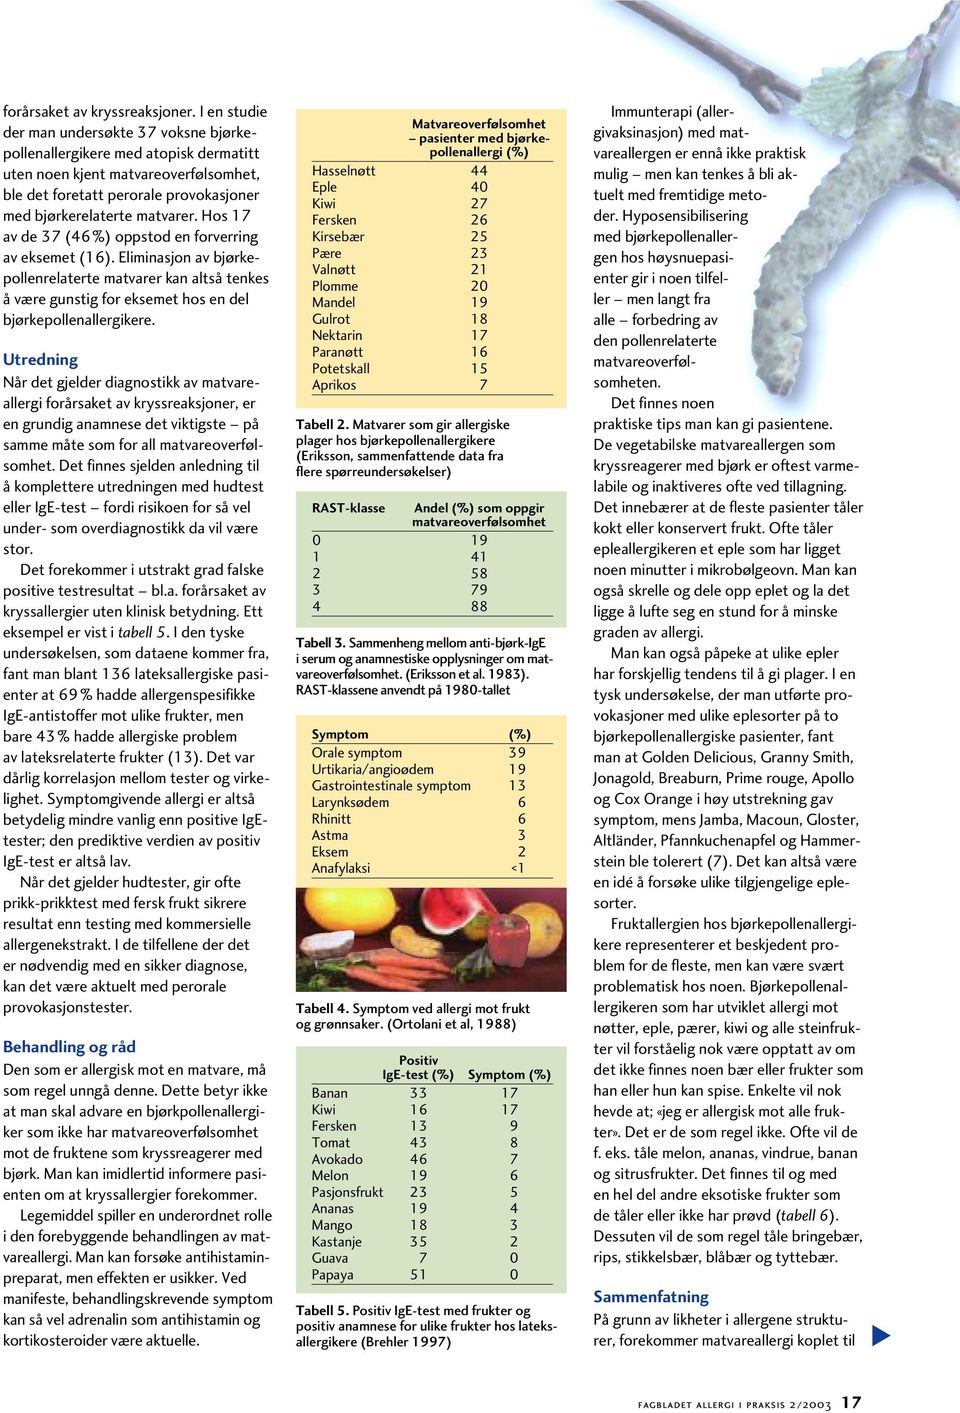 Hos 17 av de 37 (46%) oppstod en forverring av eksemet (16). Eliminasjon av bjørkepollenrelaterte matvarer kan altså tenkes å være gunstig for eksemet hos en del bjørkepollenallergikere.